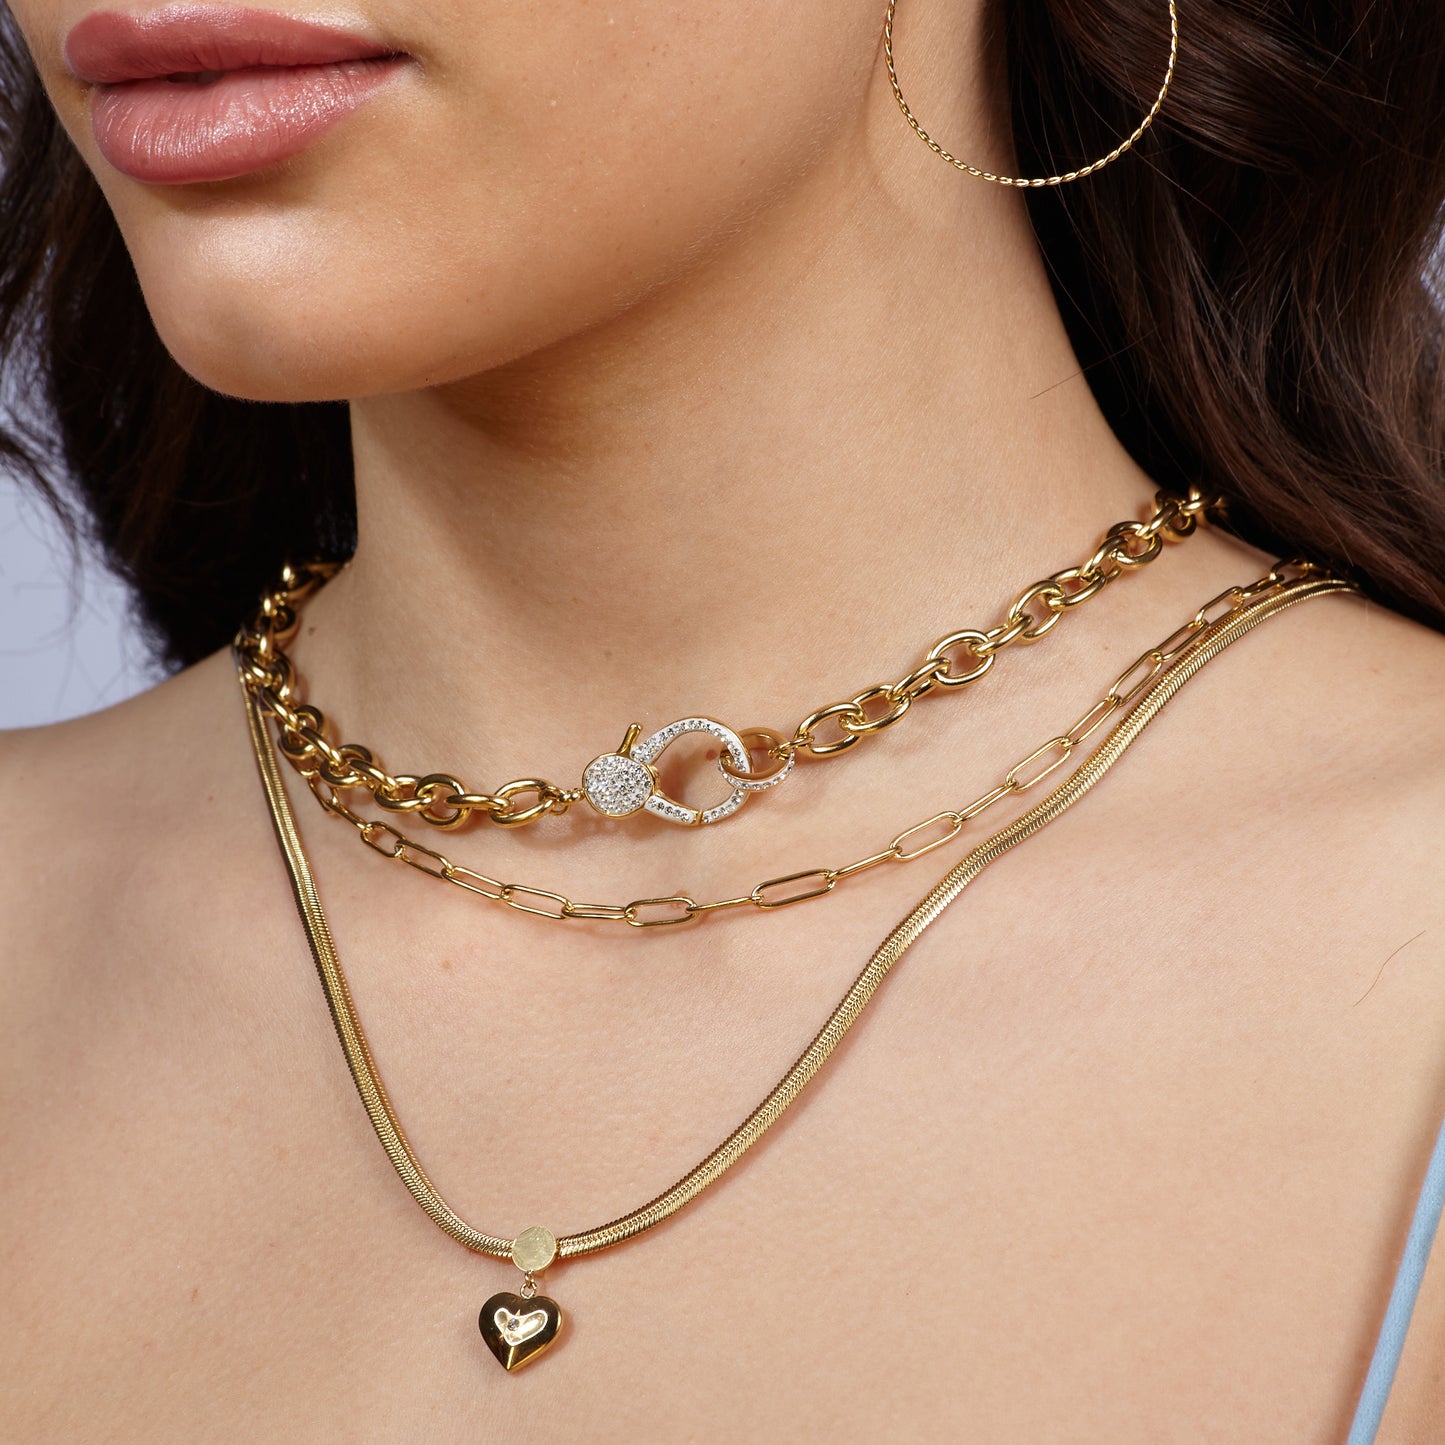 Halskette "Lavish Chain" Edelstahl 14K vergoldet in zwei Farben